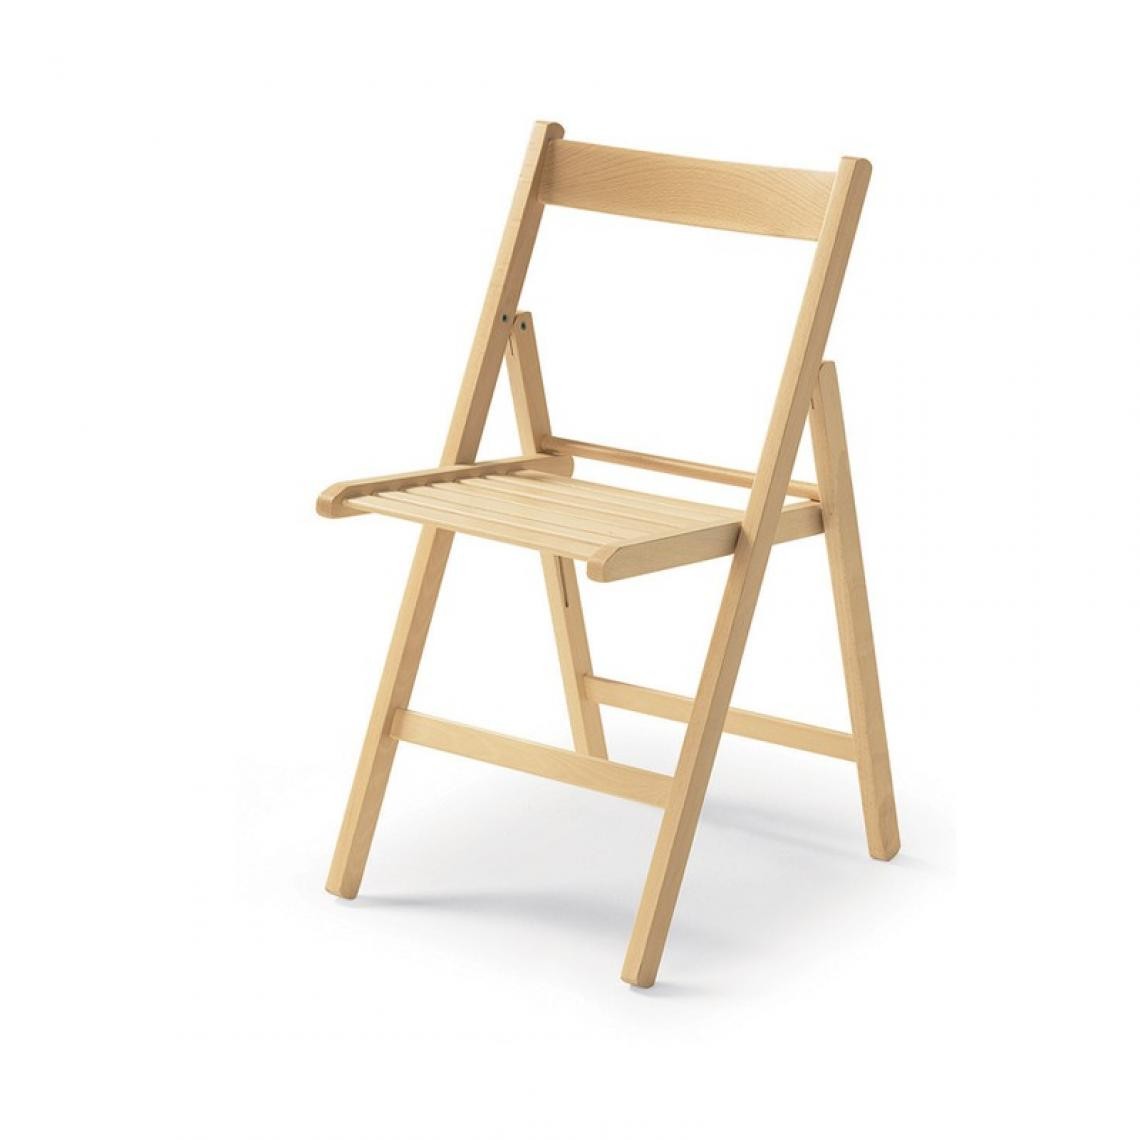 Webmarketpoint - Chaise pliante en hêtre de haute qualité, couleur naturelle 43x48xh.79 cm - Chaises